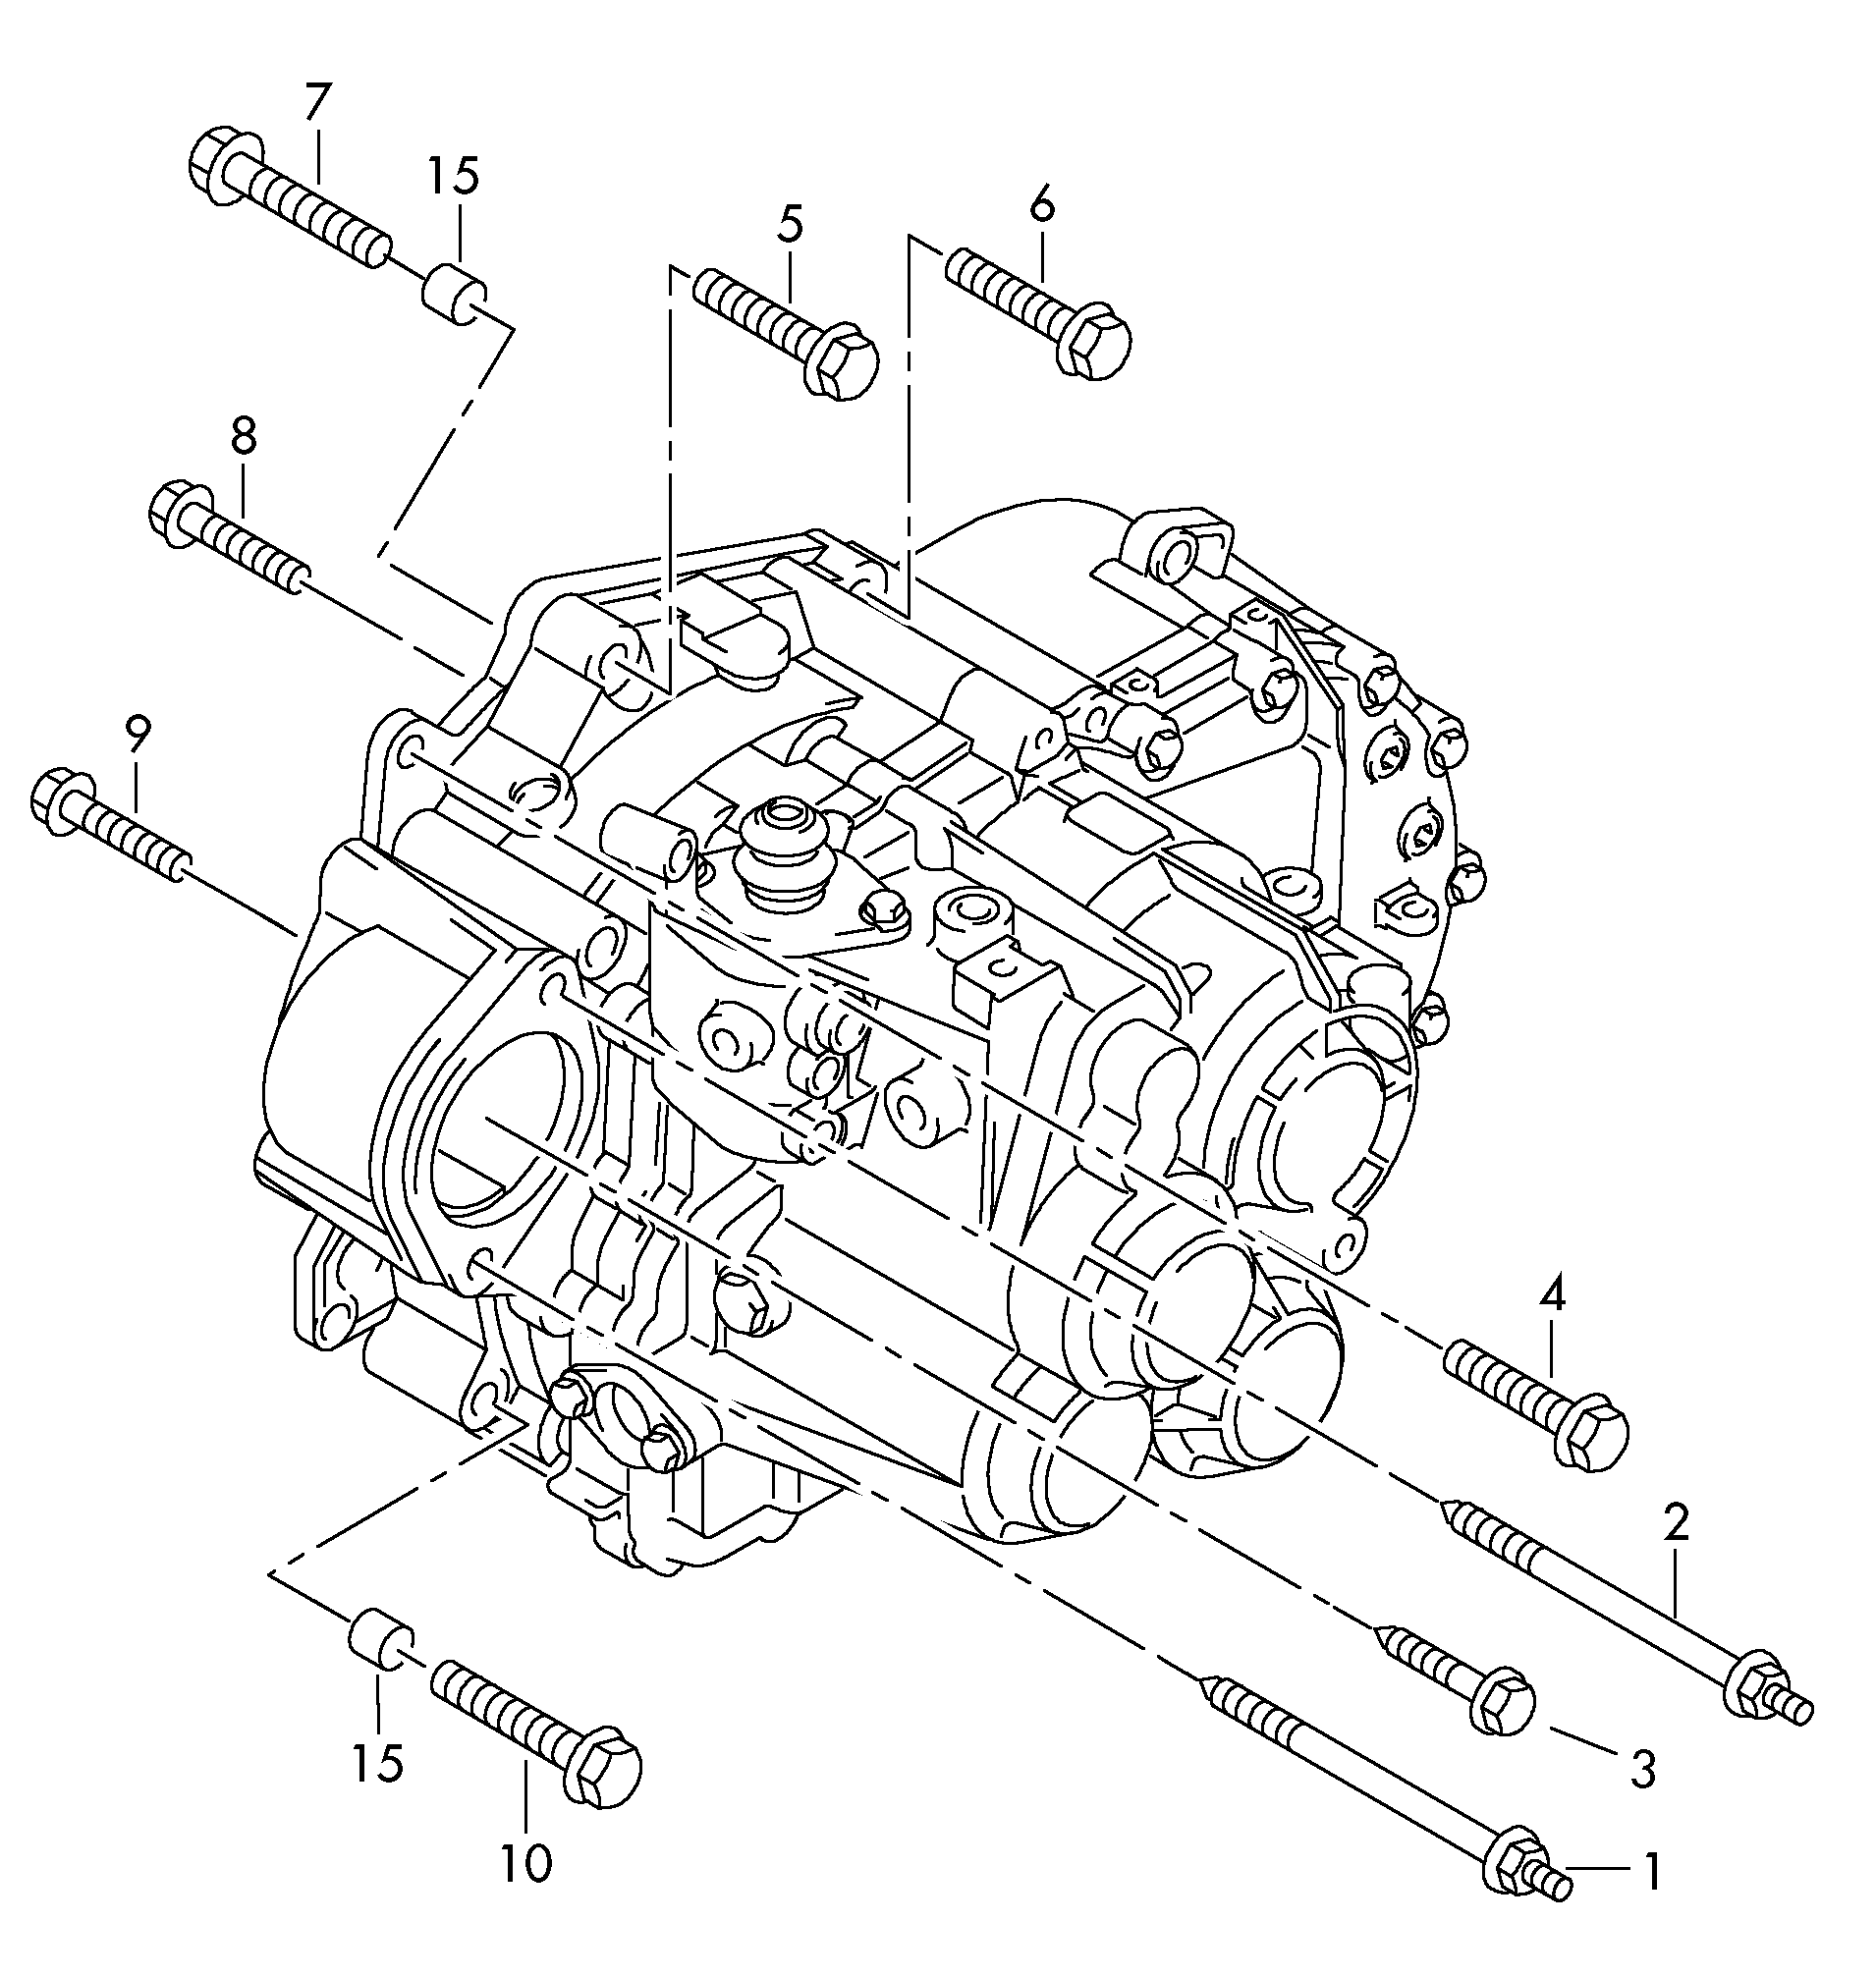 piezas fijacion p. motor y<br>cambiocambio manual 6 marchas 1,4l<br> MQ350 - Tiguan - tig